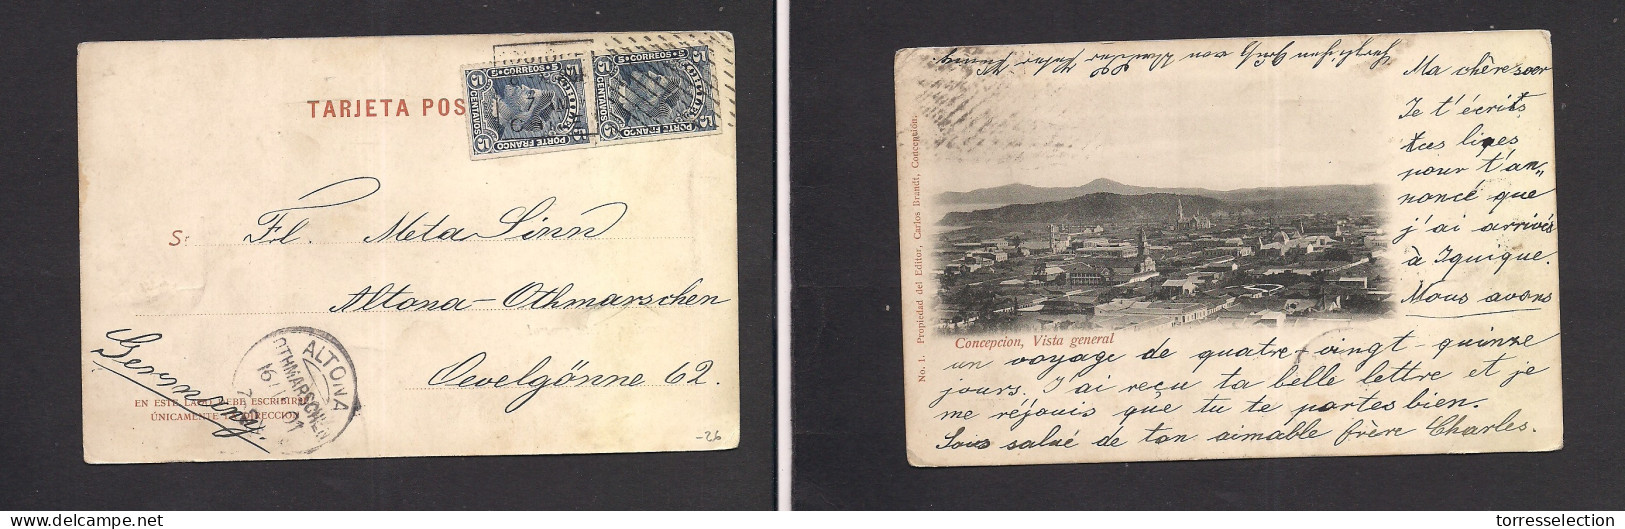 Chile - XX. 1901 (8 Oct) Iquique - Germany, Altona (16 Nov) Multifkd Ppc. Early Concepcion Pcard. Fine. - Chili